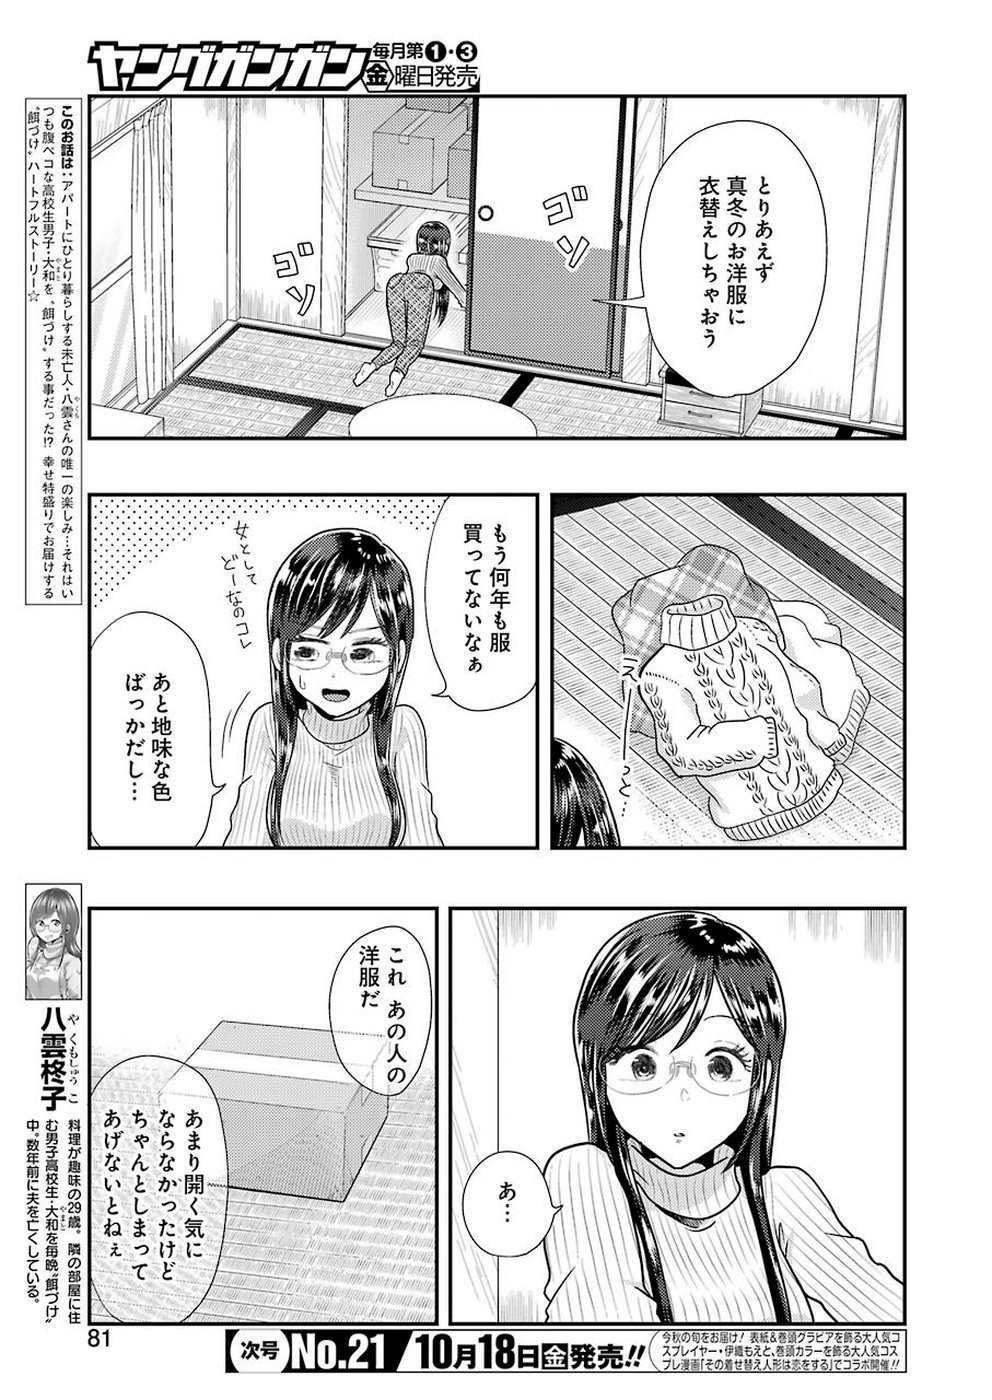 Yakumo-san wa Edzuke ga Shitai. - Chapter 059 - Page 3